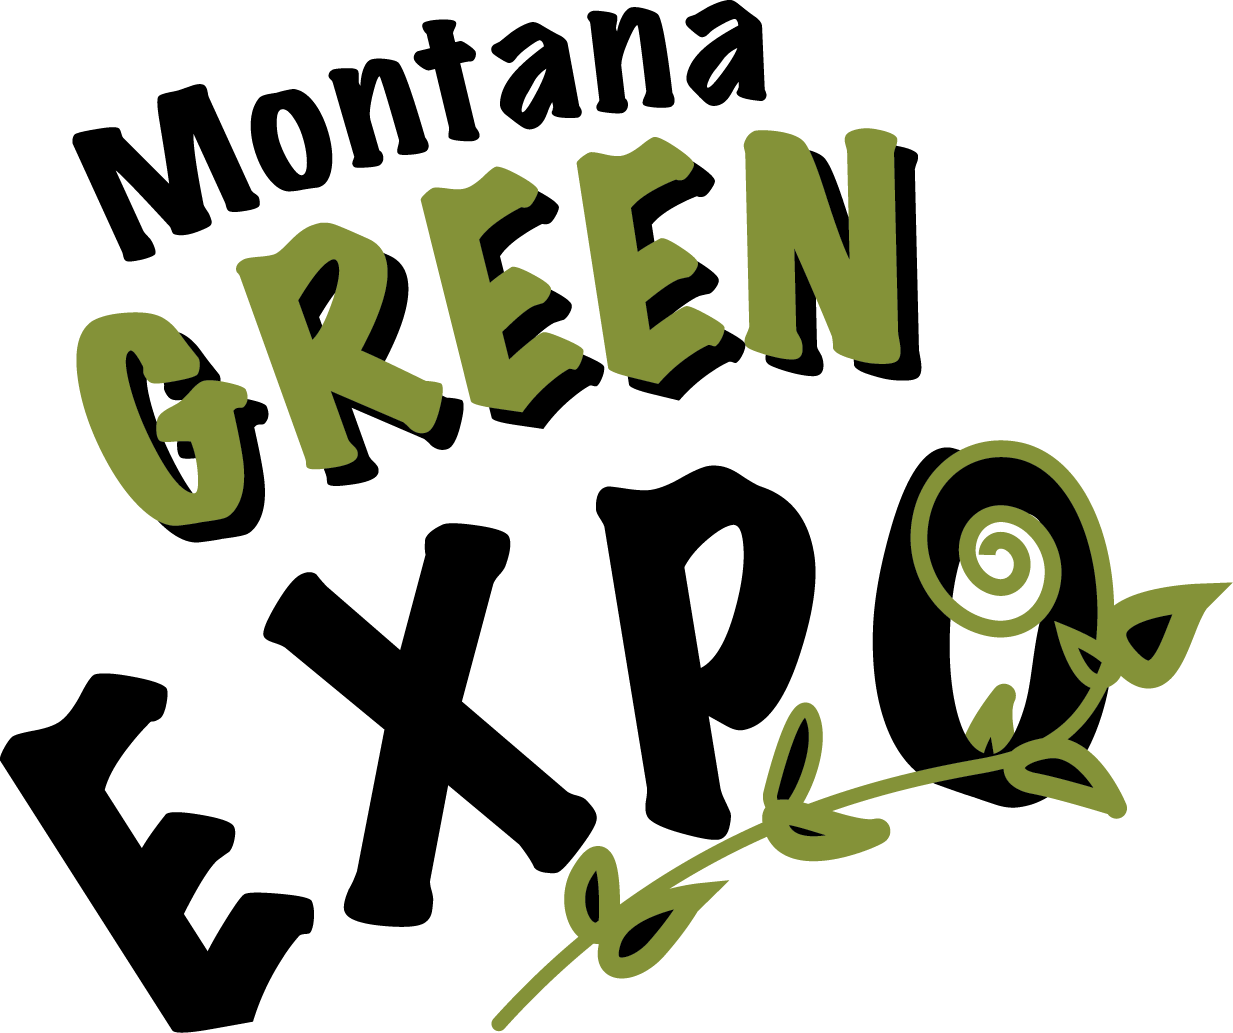 Montana Green Expo logo